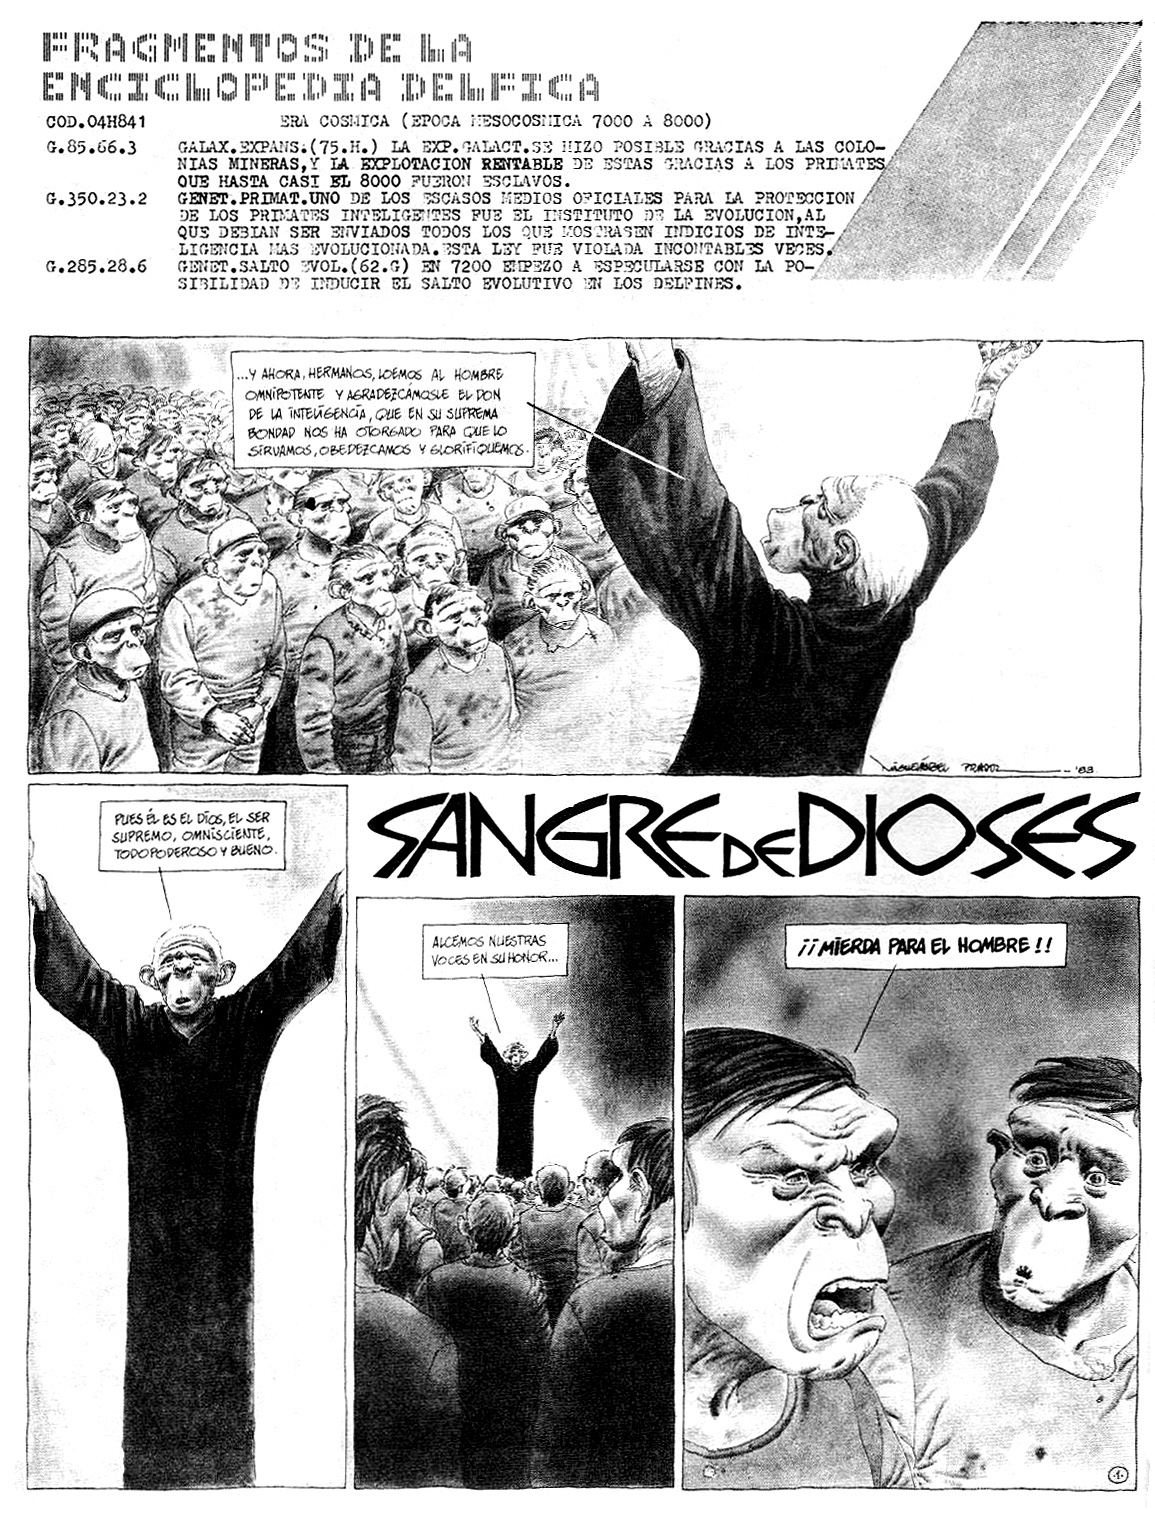 El topic de los grandes comics y dibujantes de los 80s - Página 2 FED+Sangre+de+Dioses+pag01+1984+%252358BUNA